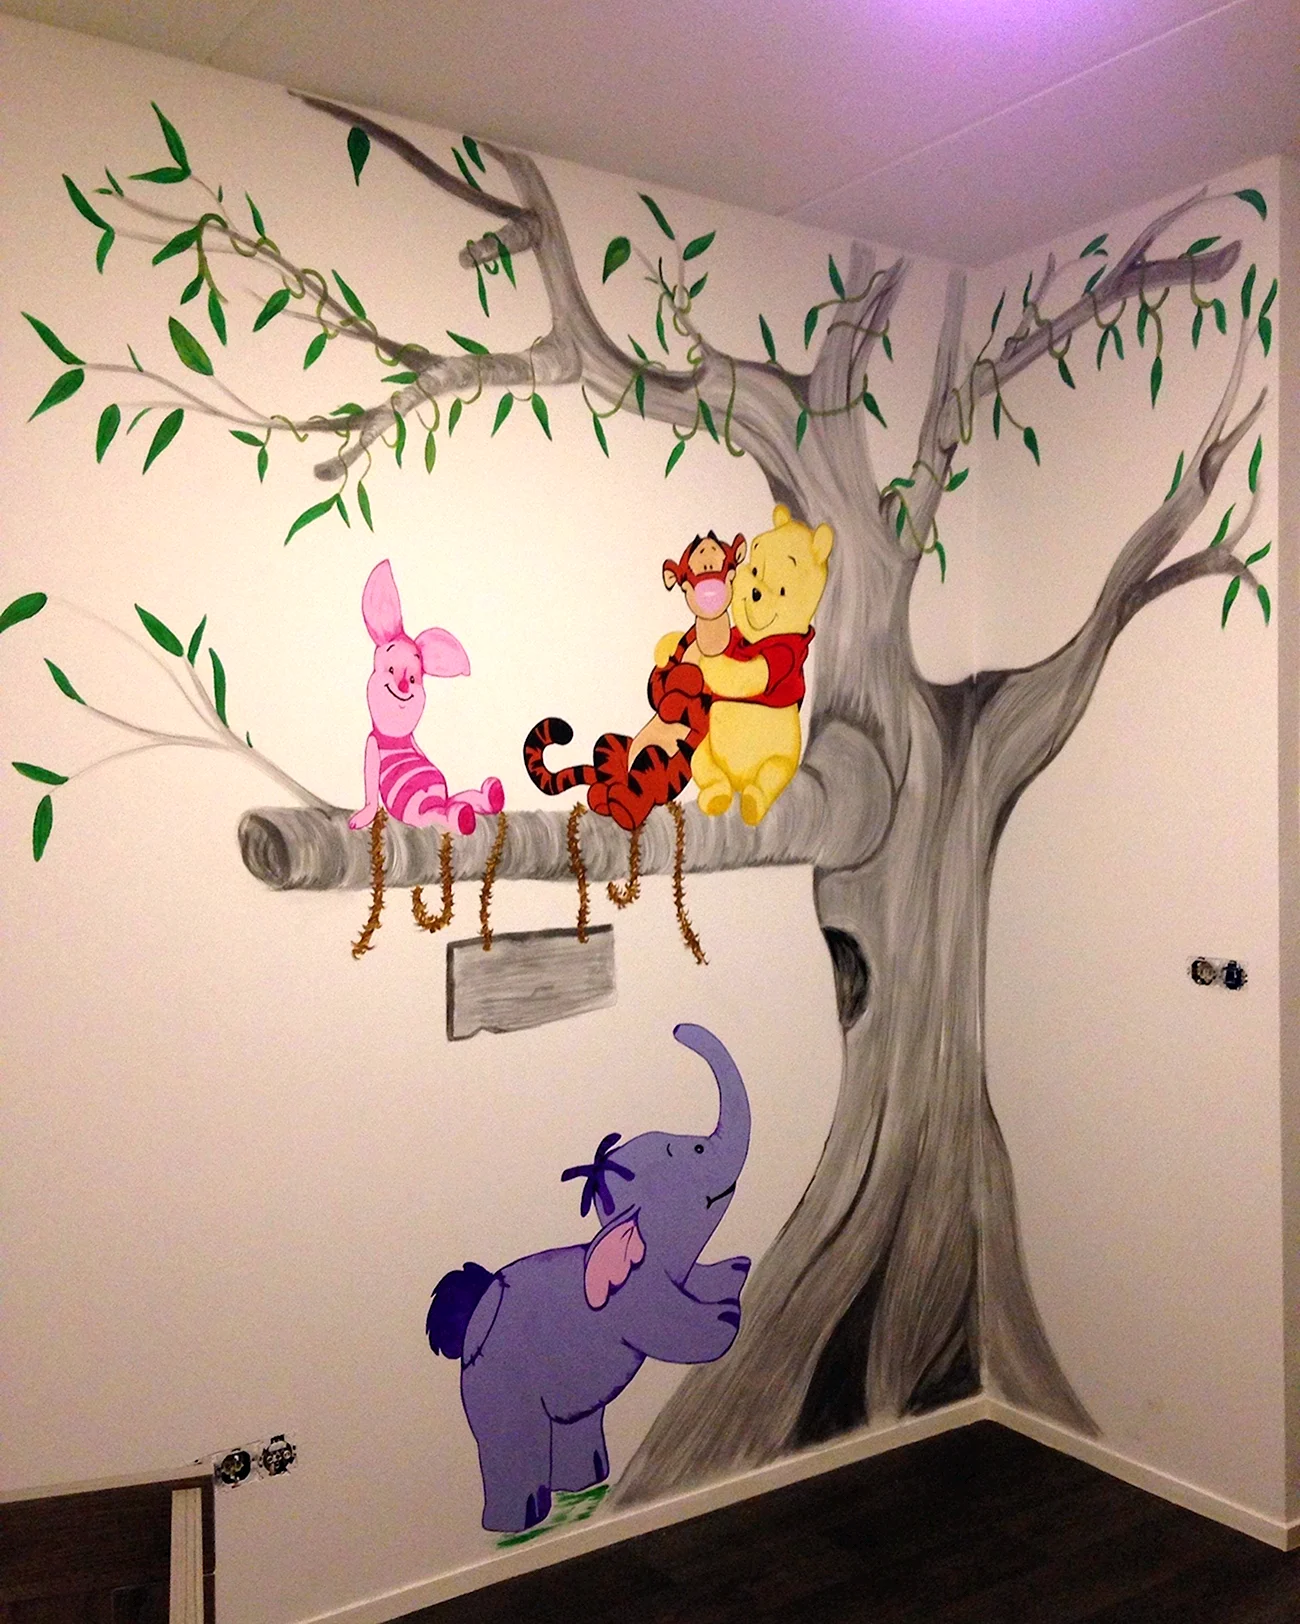 Разрисовать стены в детской комнате. Красивая картинка